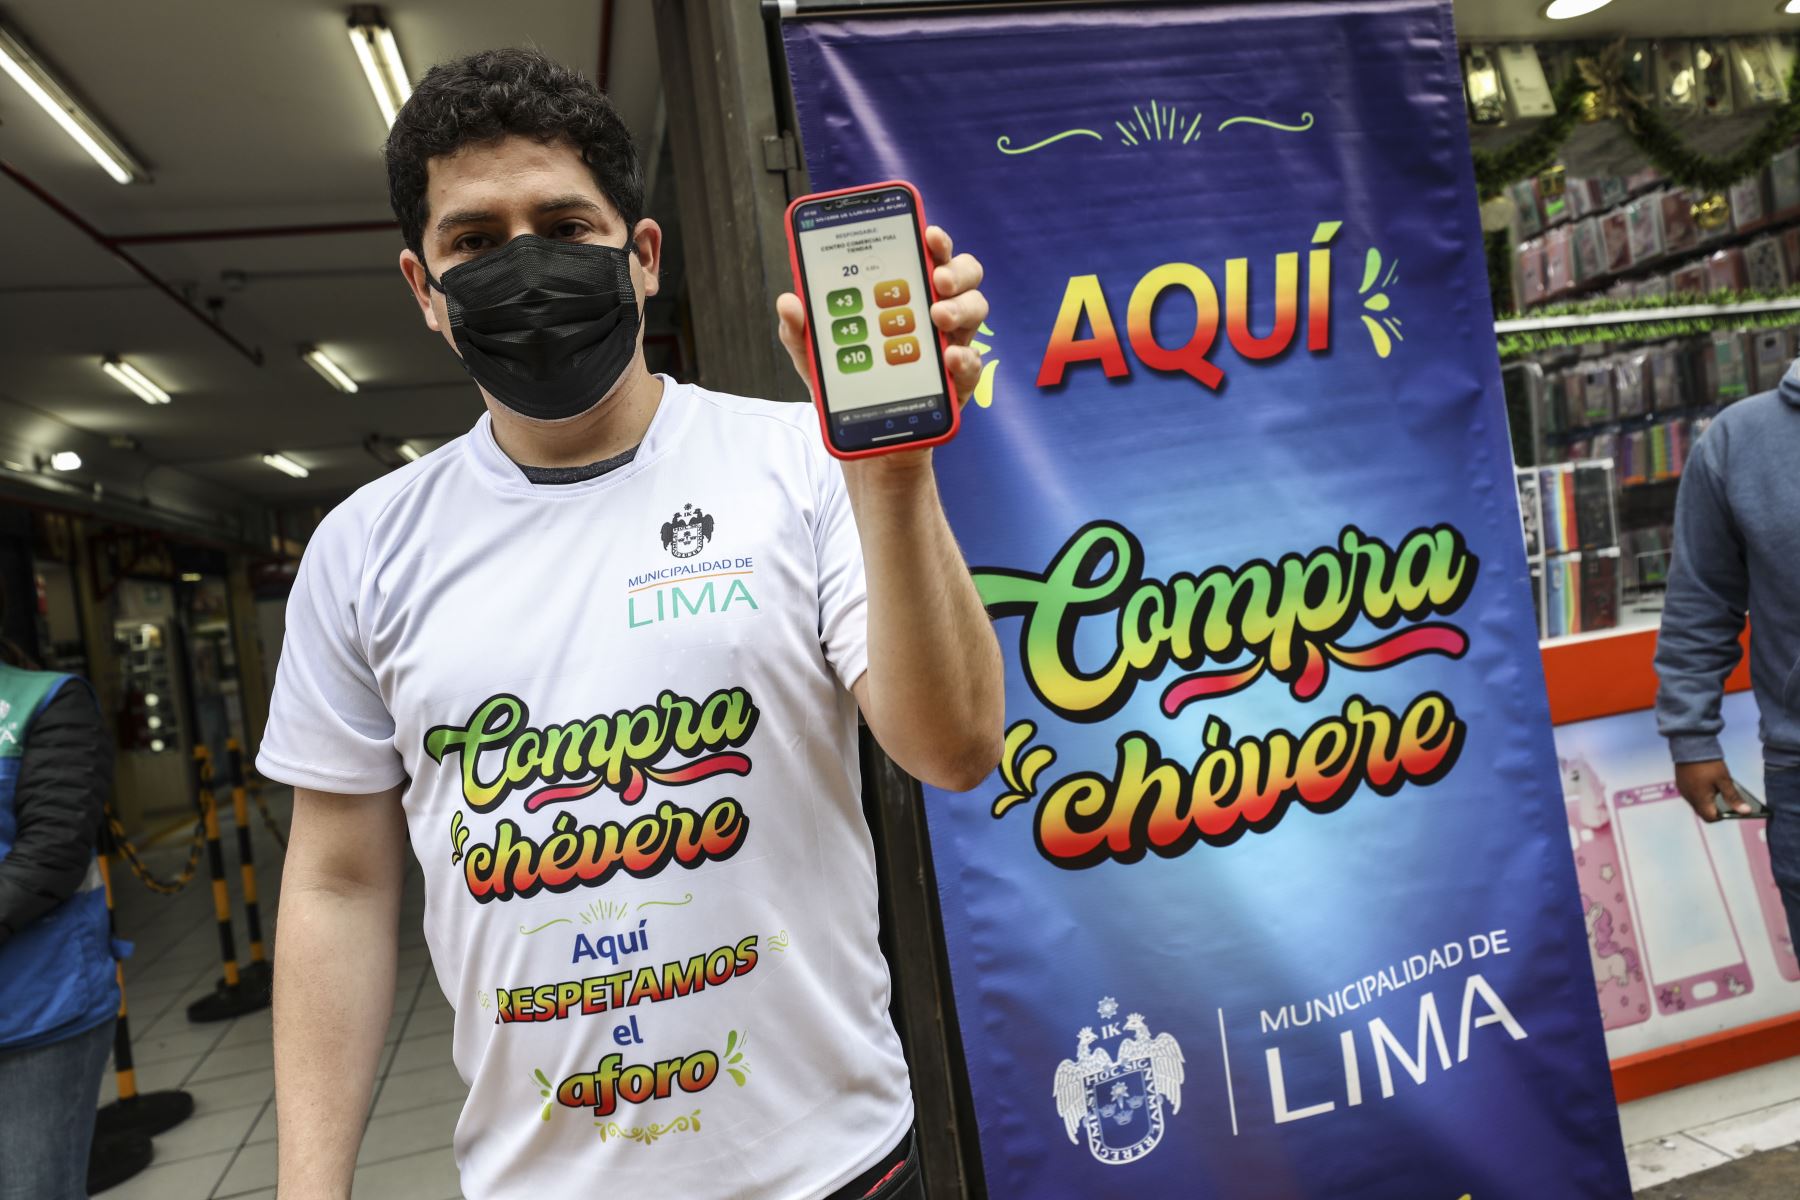 La Municipalidad de Lima presenta la app móvil Compra Chévere, que permitirá a las galerías de Mesa Redonda controlar el aforo de manera sencilla y en tiempo real, a fin de garantizar espacios seguros y libres de aglomeraciones. Foto: ANDINA/Municipalidad de Lima